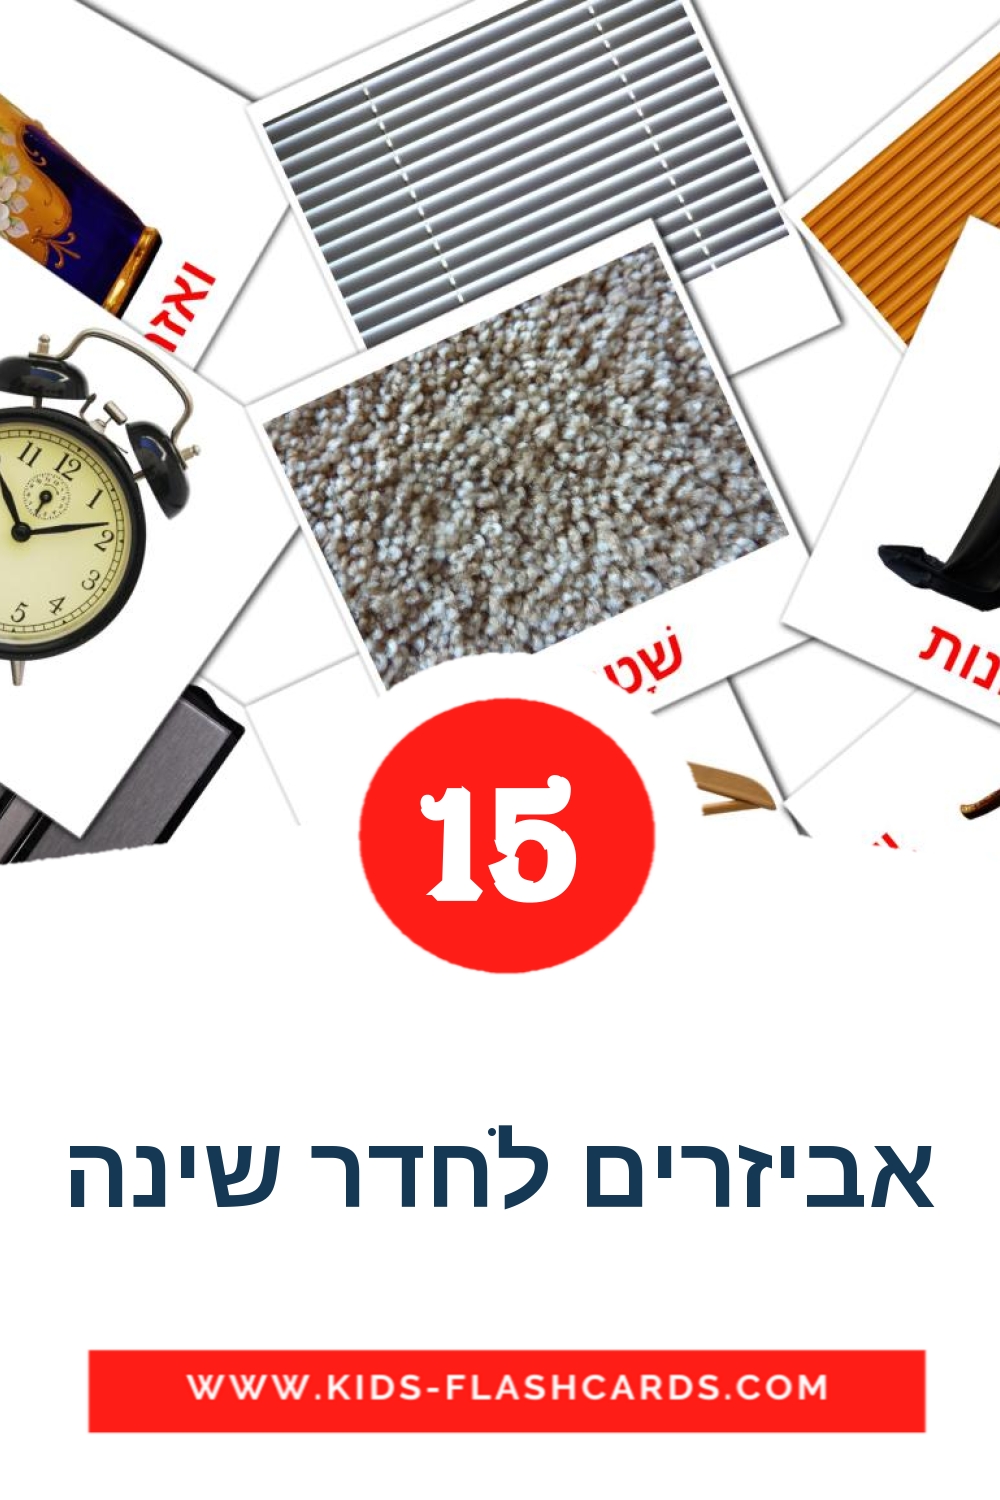 15 cartes illustrées de אביזרים לחדר שינה pour la maternelle en hébreu